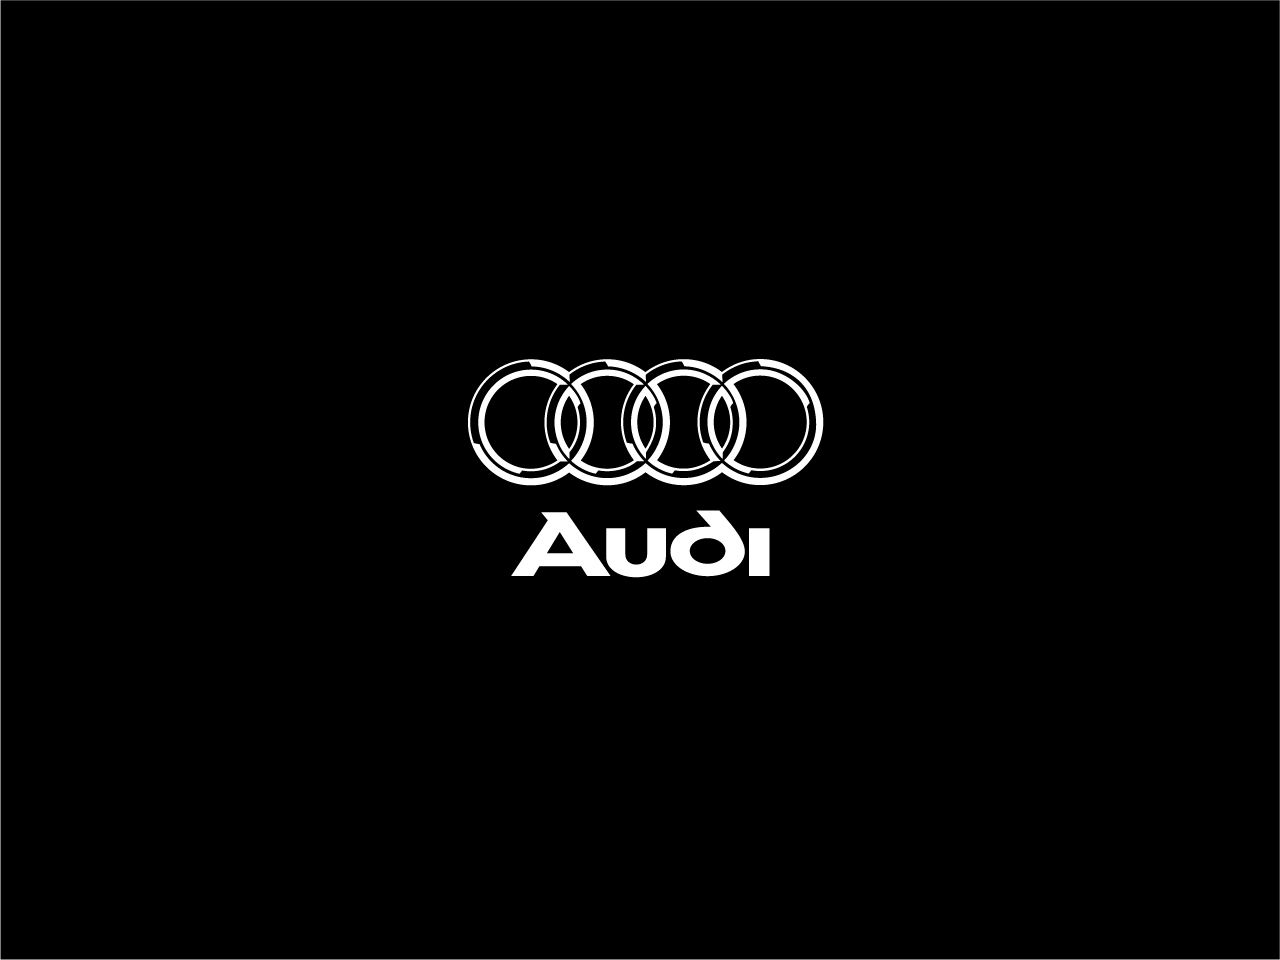 Audi logo wallpaper audi logo logo sports car wallpaper